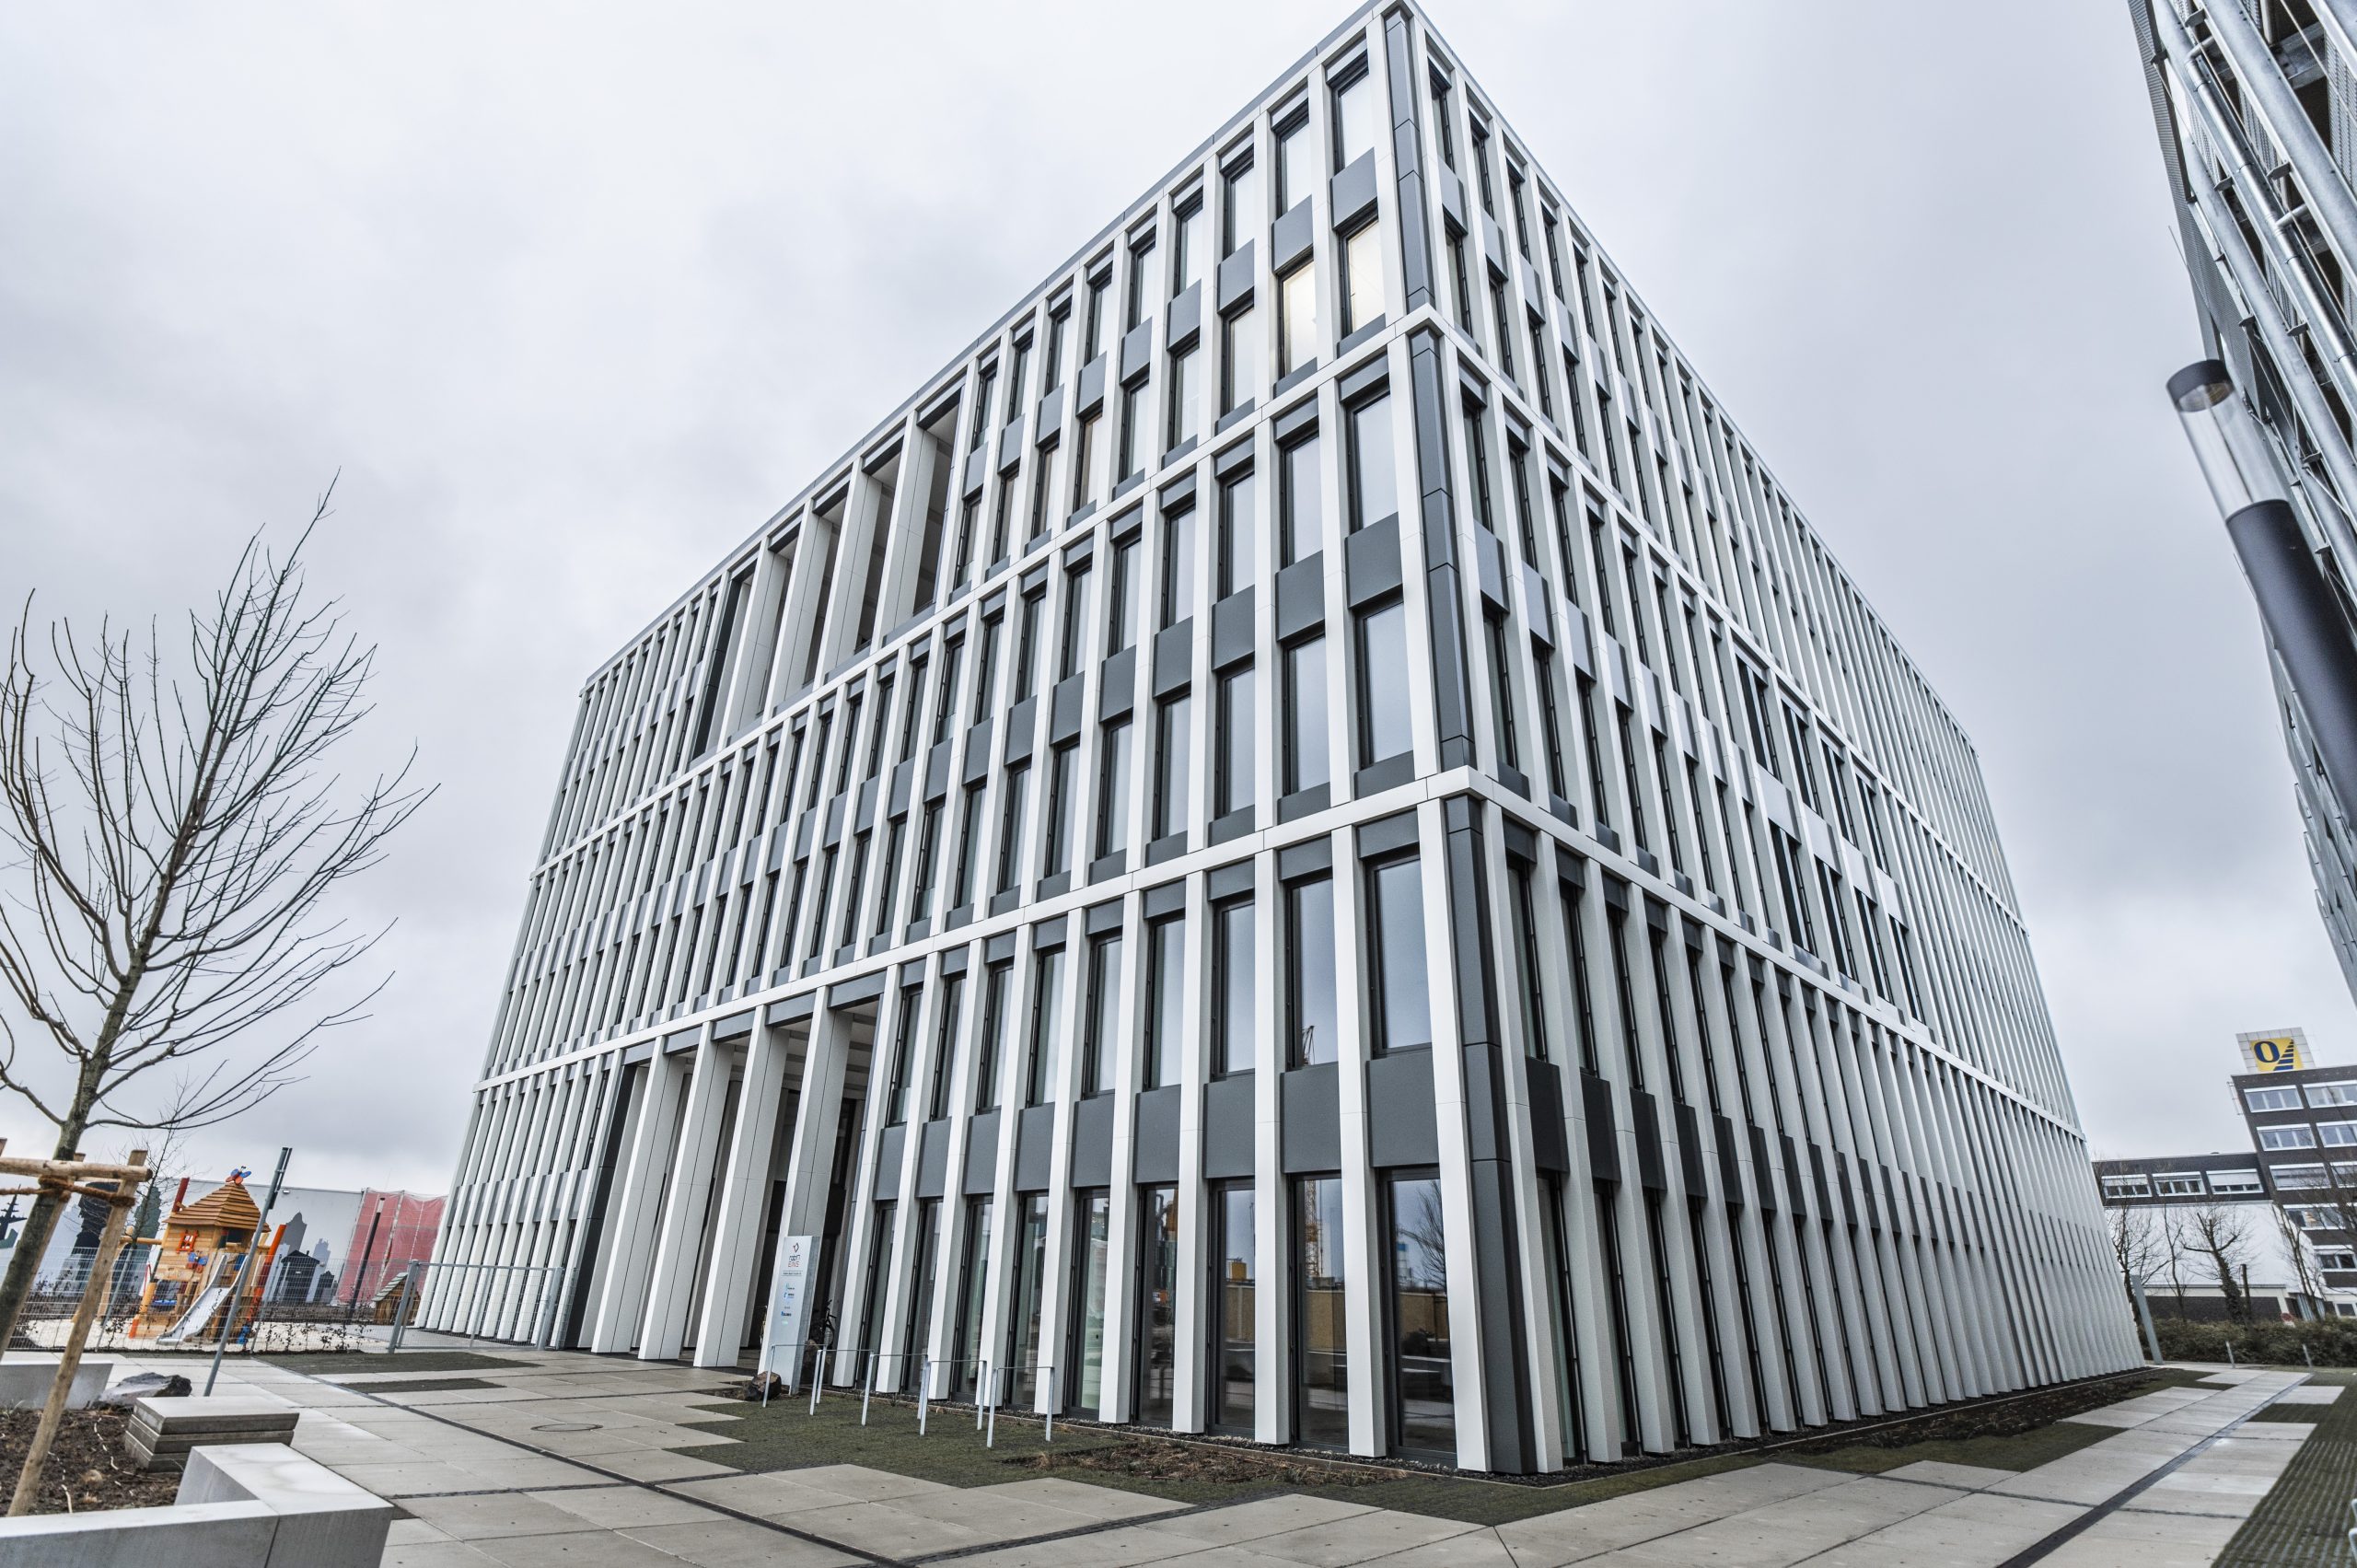 Das Foto zeigt ein neu erbautes Bürogebäude in Münster. Dessen moderne Fassade sticht hervor im Vergleich zu den anderen Gebäuden in der Umgebung